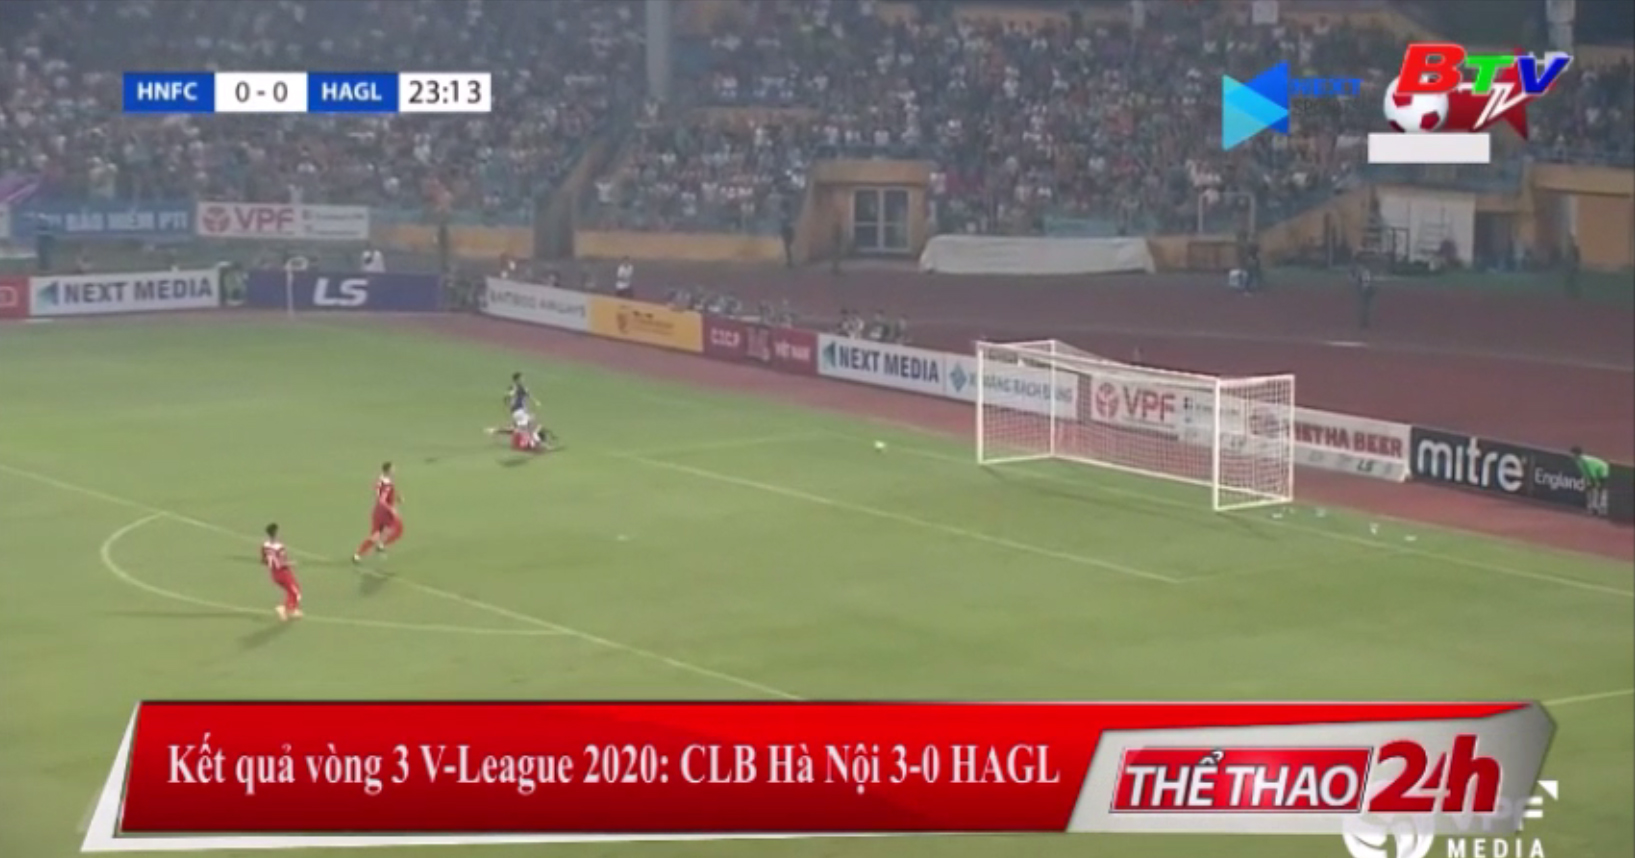 Kết quả vòng 3 V-League 2020 – CLB Hà Nội 3-0 HAGL